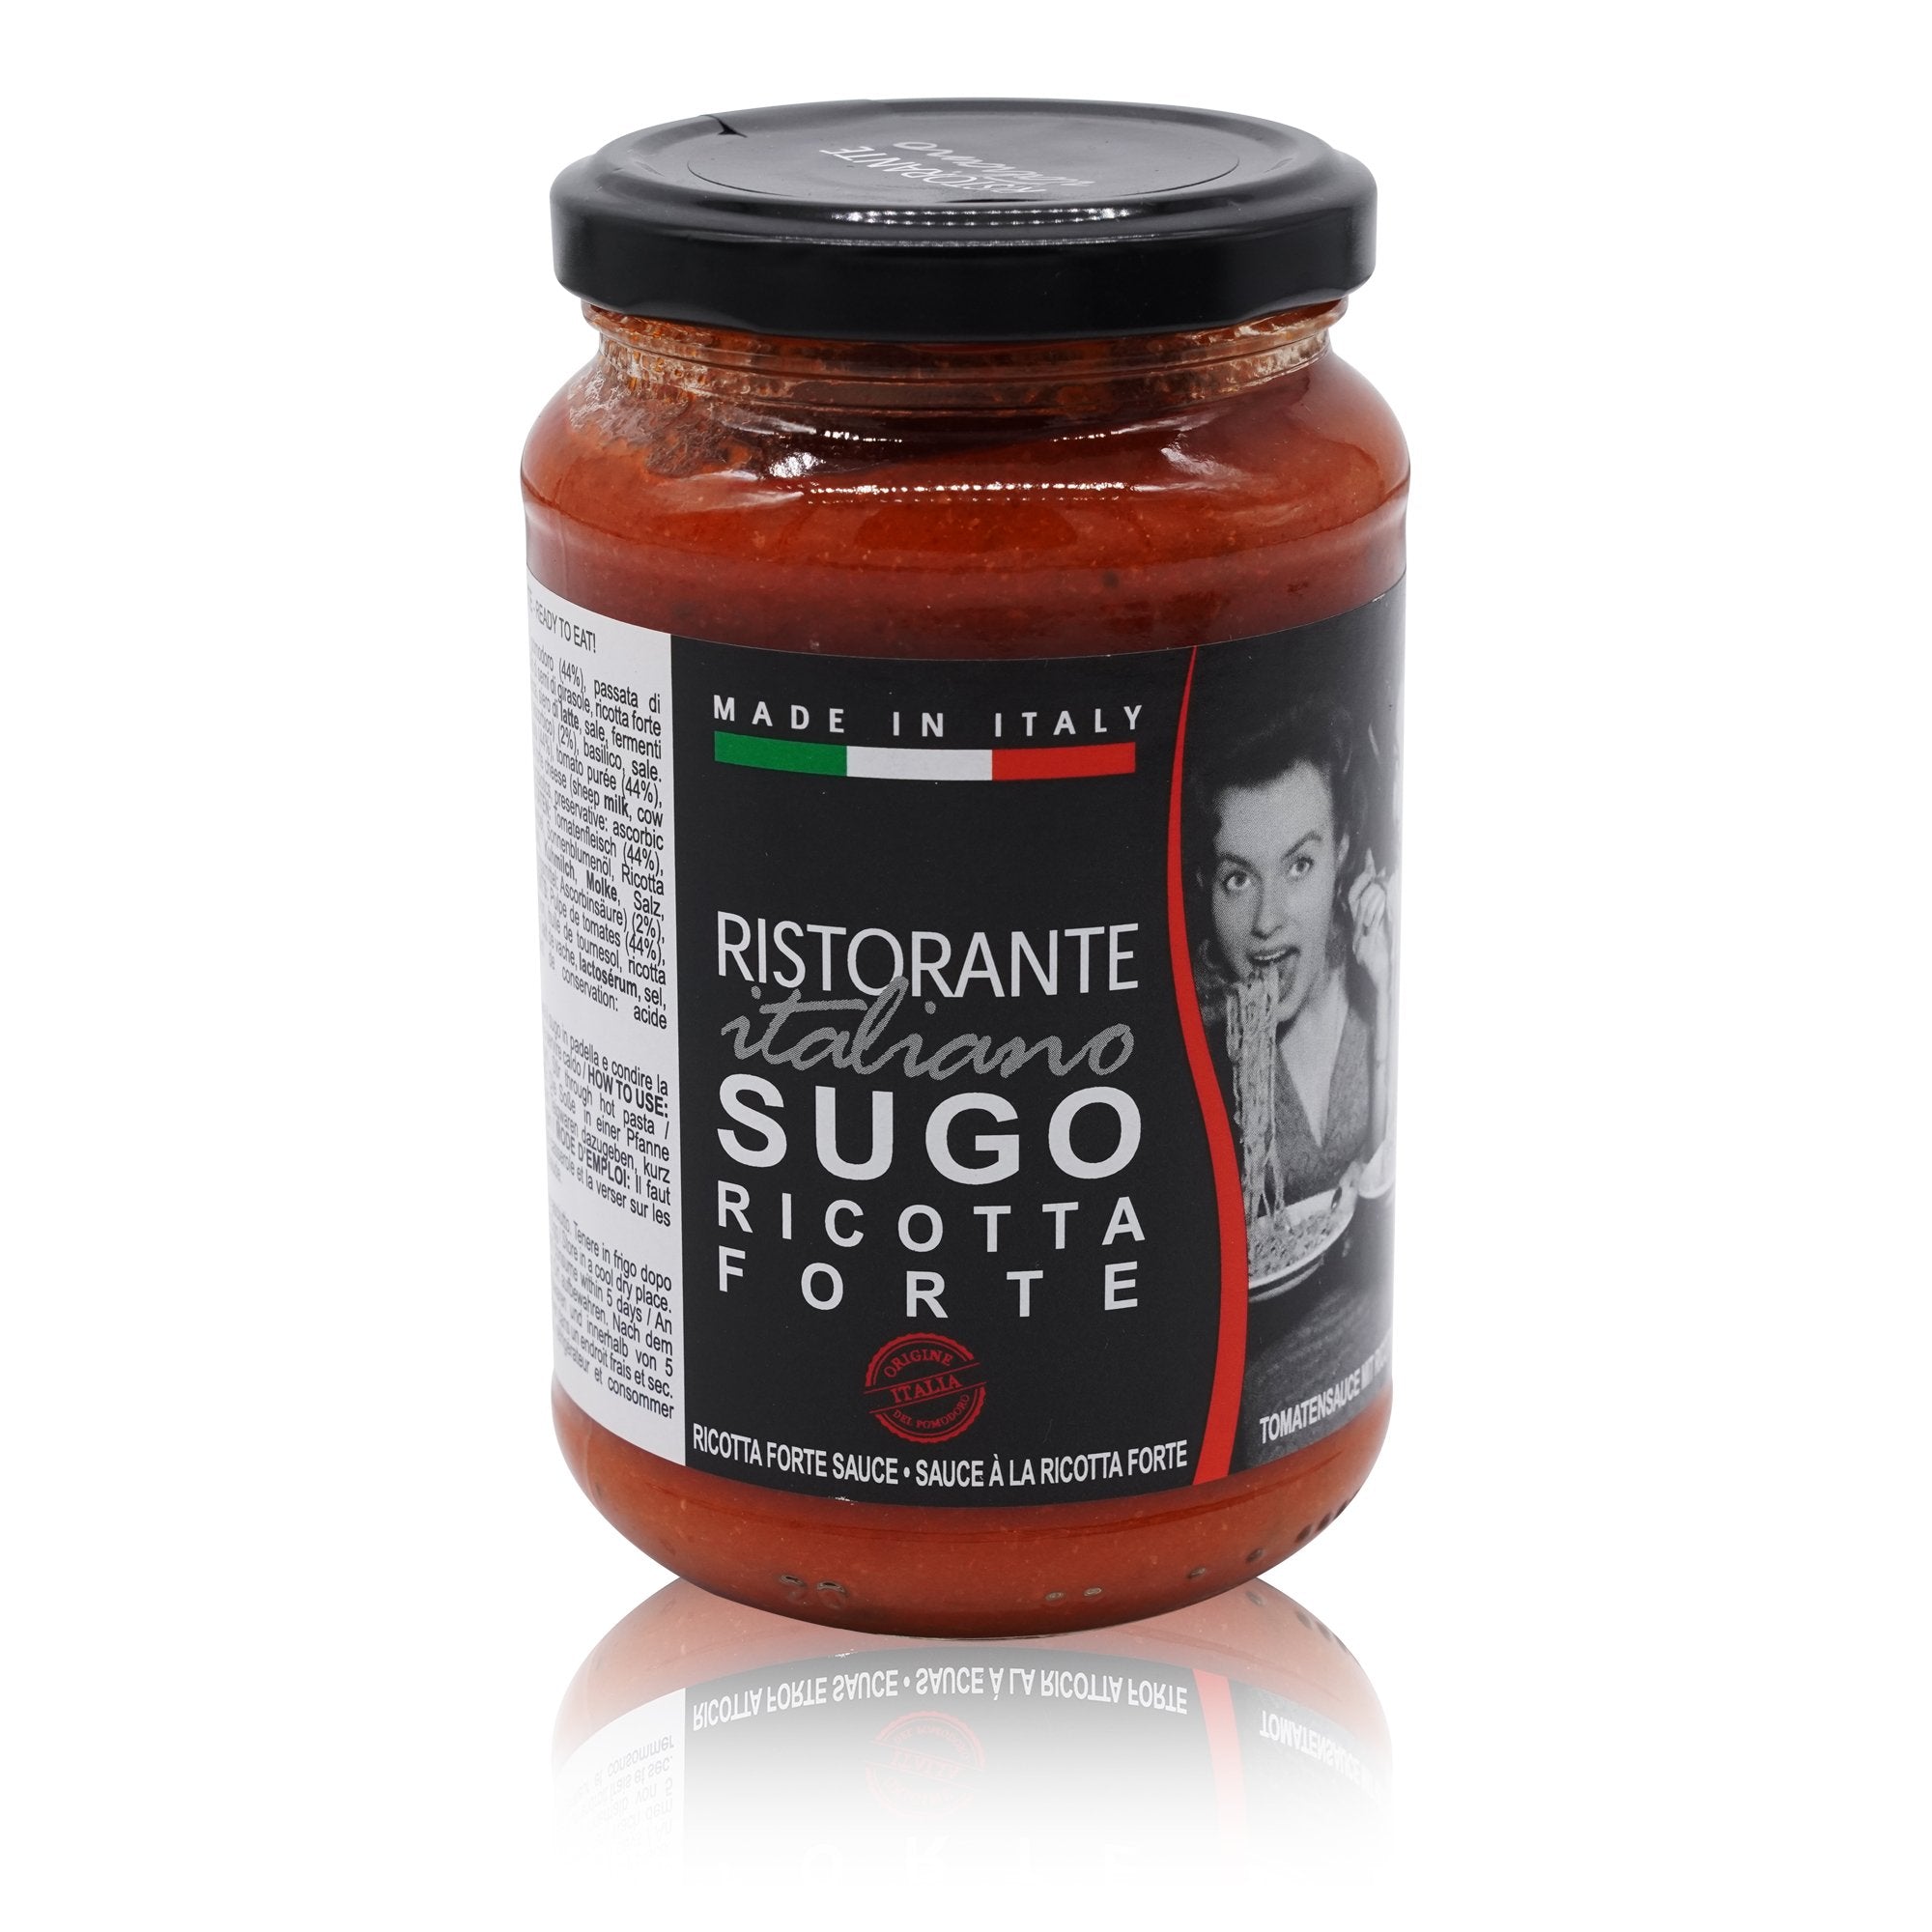 RISTORANTE ITALIANO Sugo alla ricotta forte – Tomatensosse mit Ricotta - 0,34kg - italienisch-einkaufen.de